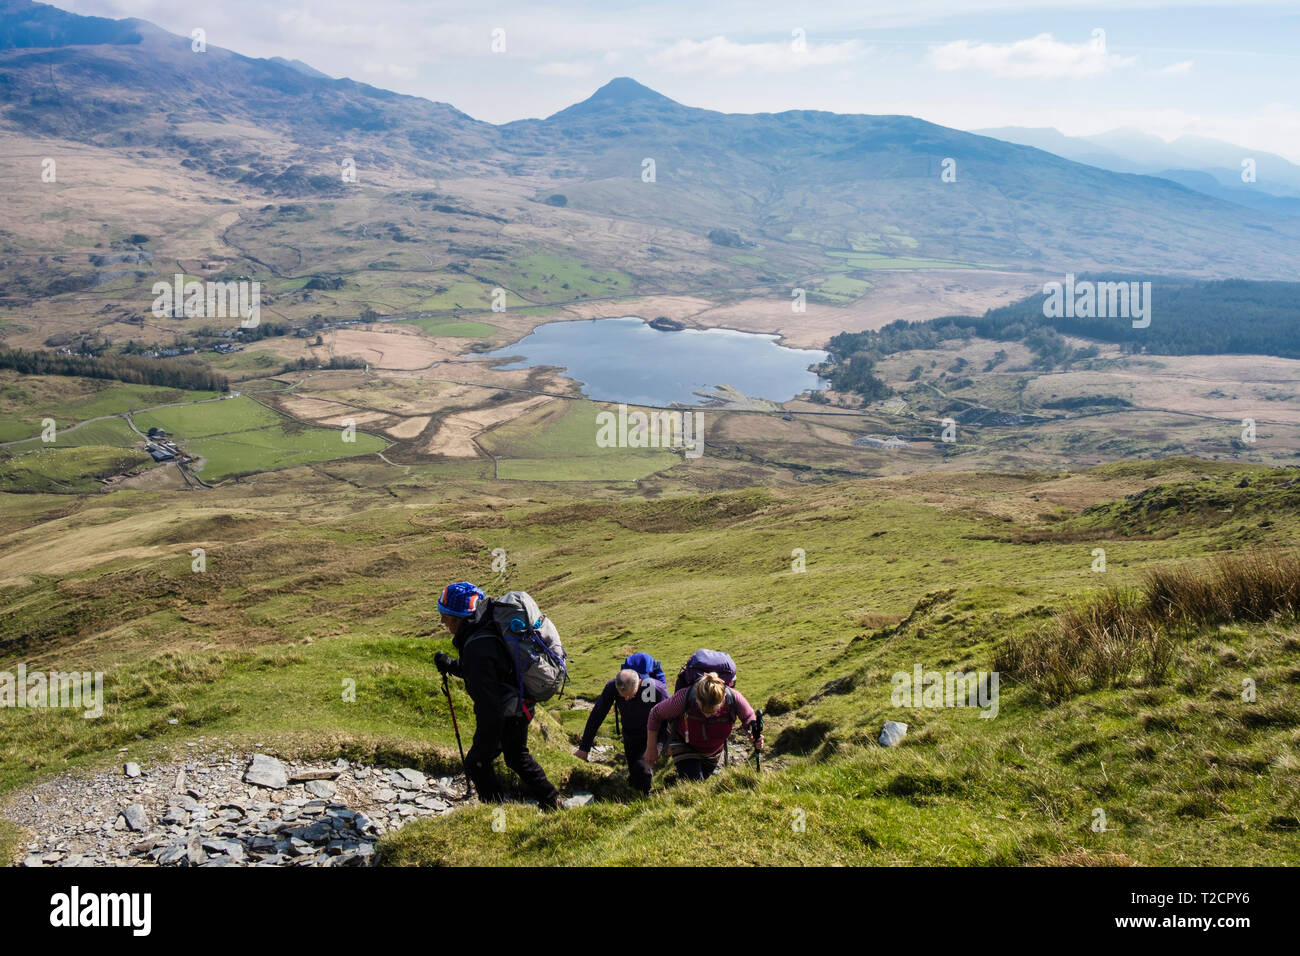 Les randonneurs randonnée un sentier de montagne pittoresque sur Y Garn pour démarrer l'Nantlle Rhyd Ddu, au-dessus de la crête de Gwynedd, Pays de Galles, Royaume-Uni, Angleterre Banque D'Images